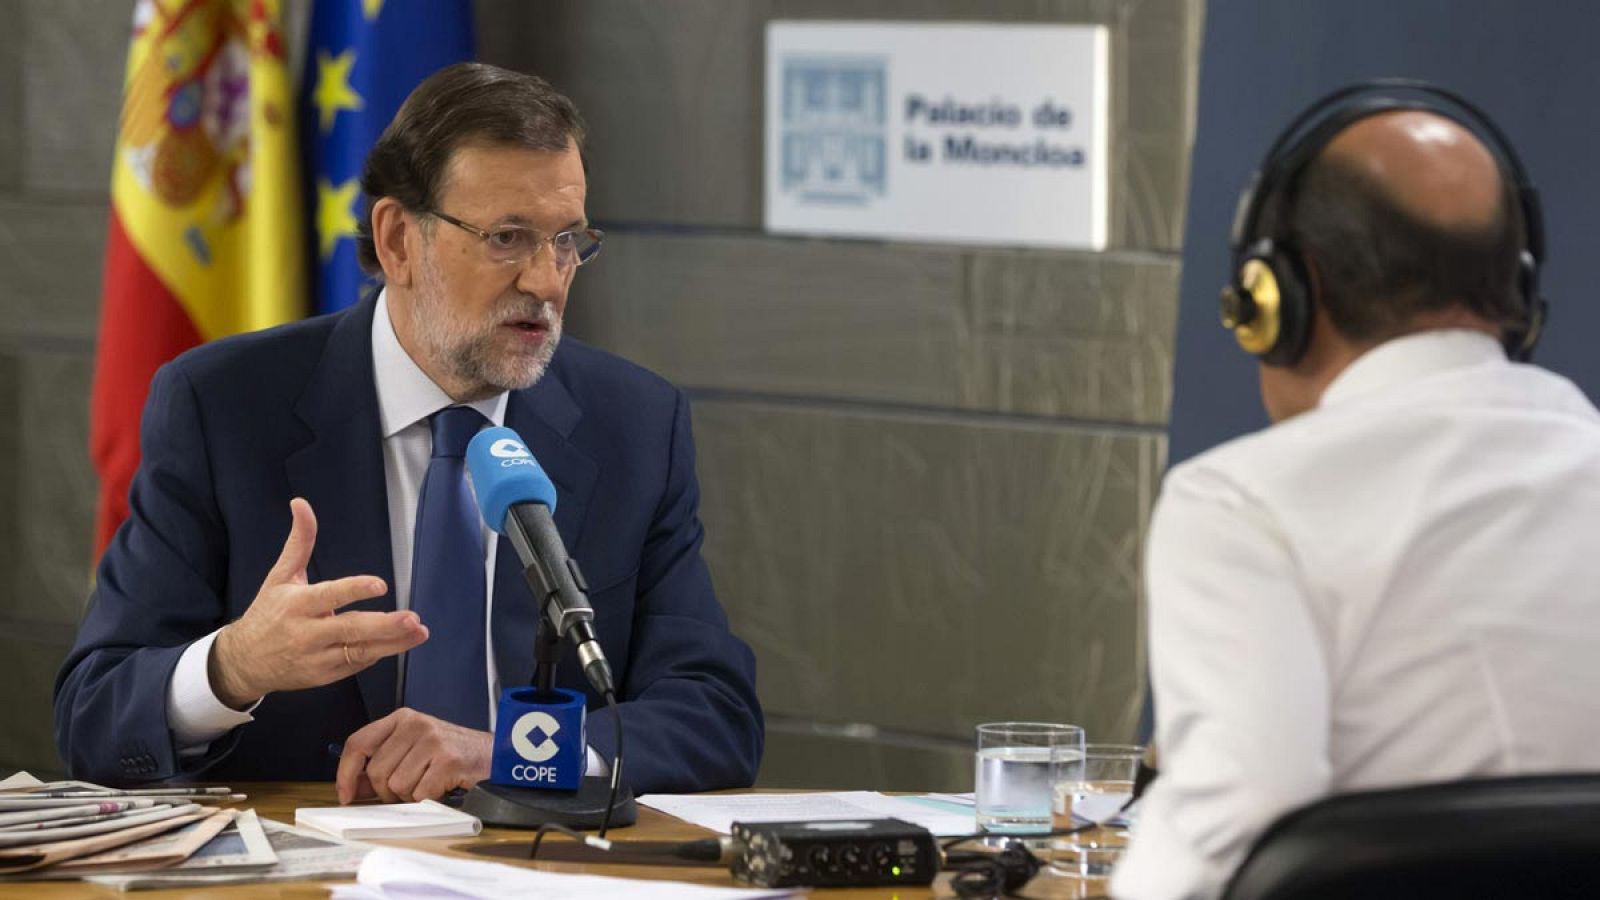 Fotografía facilitada por Presidencia del Gobierno, del presidente, Mariano Rajoy (i), durante la entrevista que ha concedido a la cadena Cope